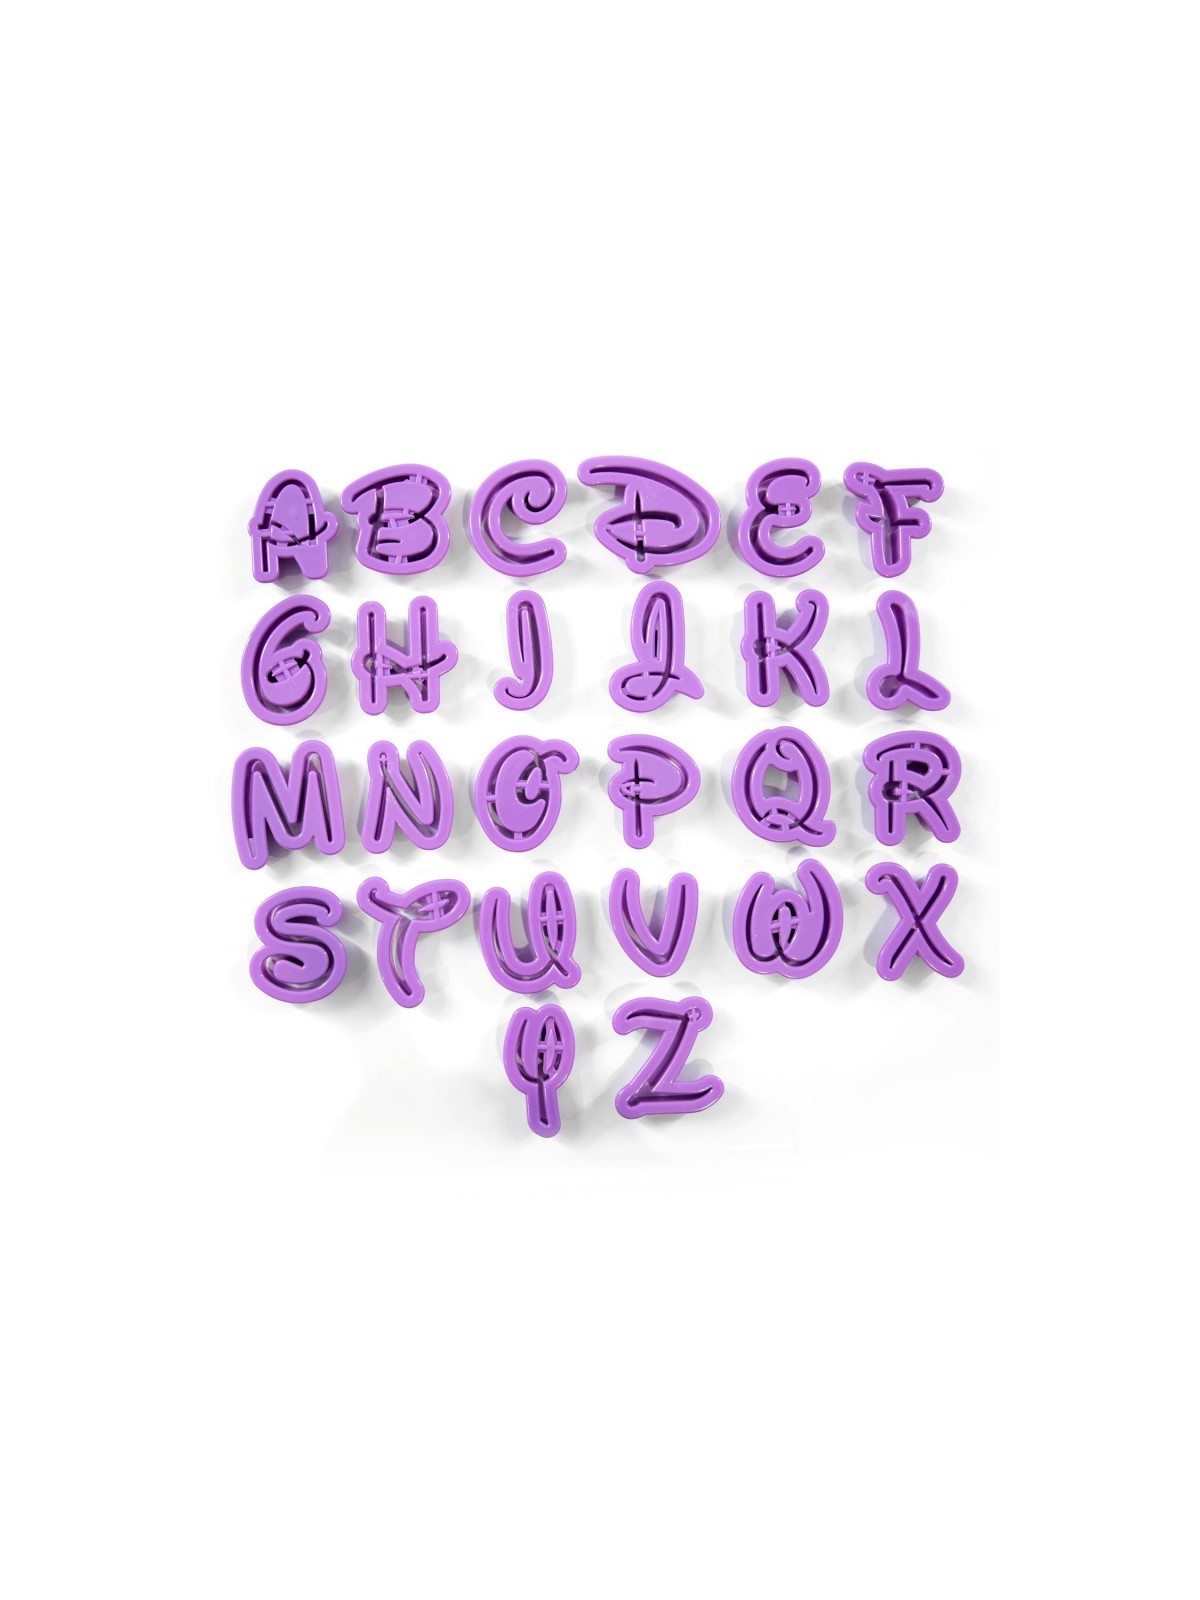 Cutters Big alphabet - Disney font 26pcs